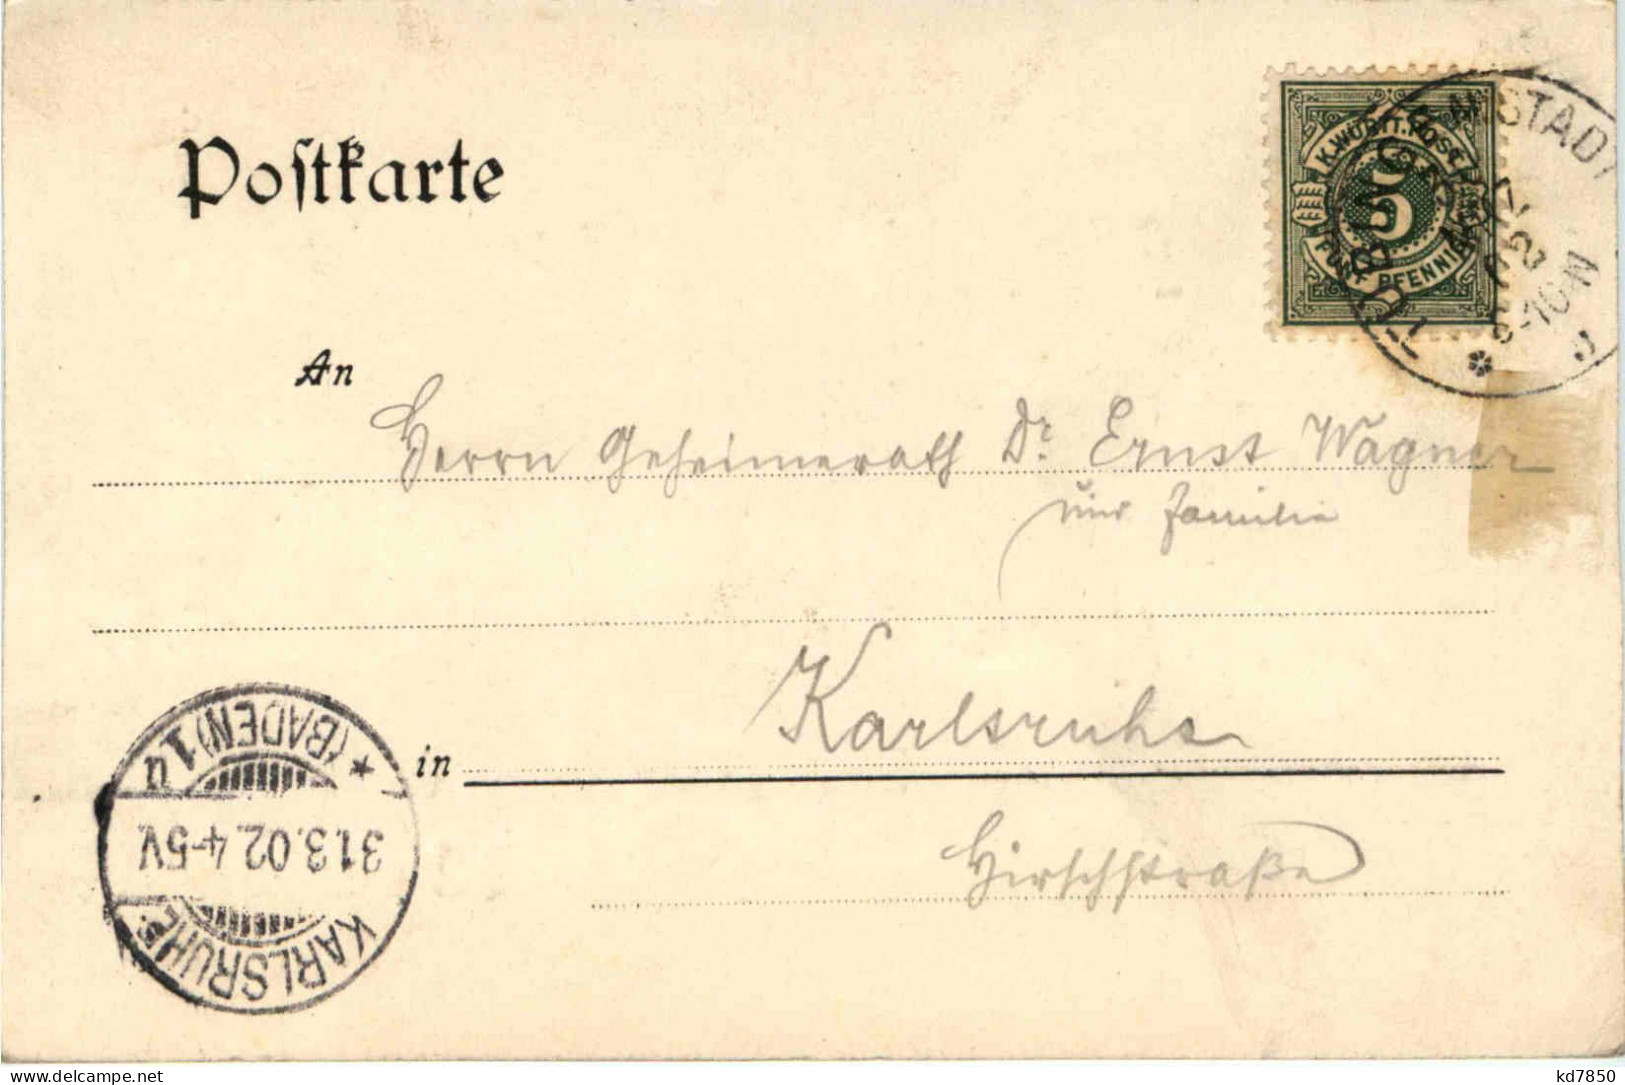 Abschied Der Württembergischen Briefmarke - Briefmarken (Abbildungen)